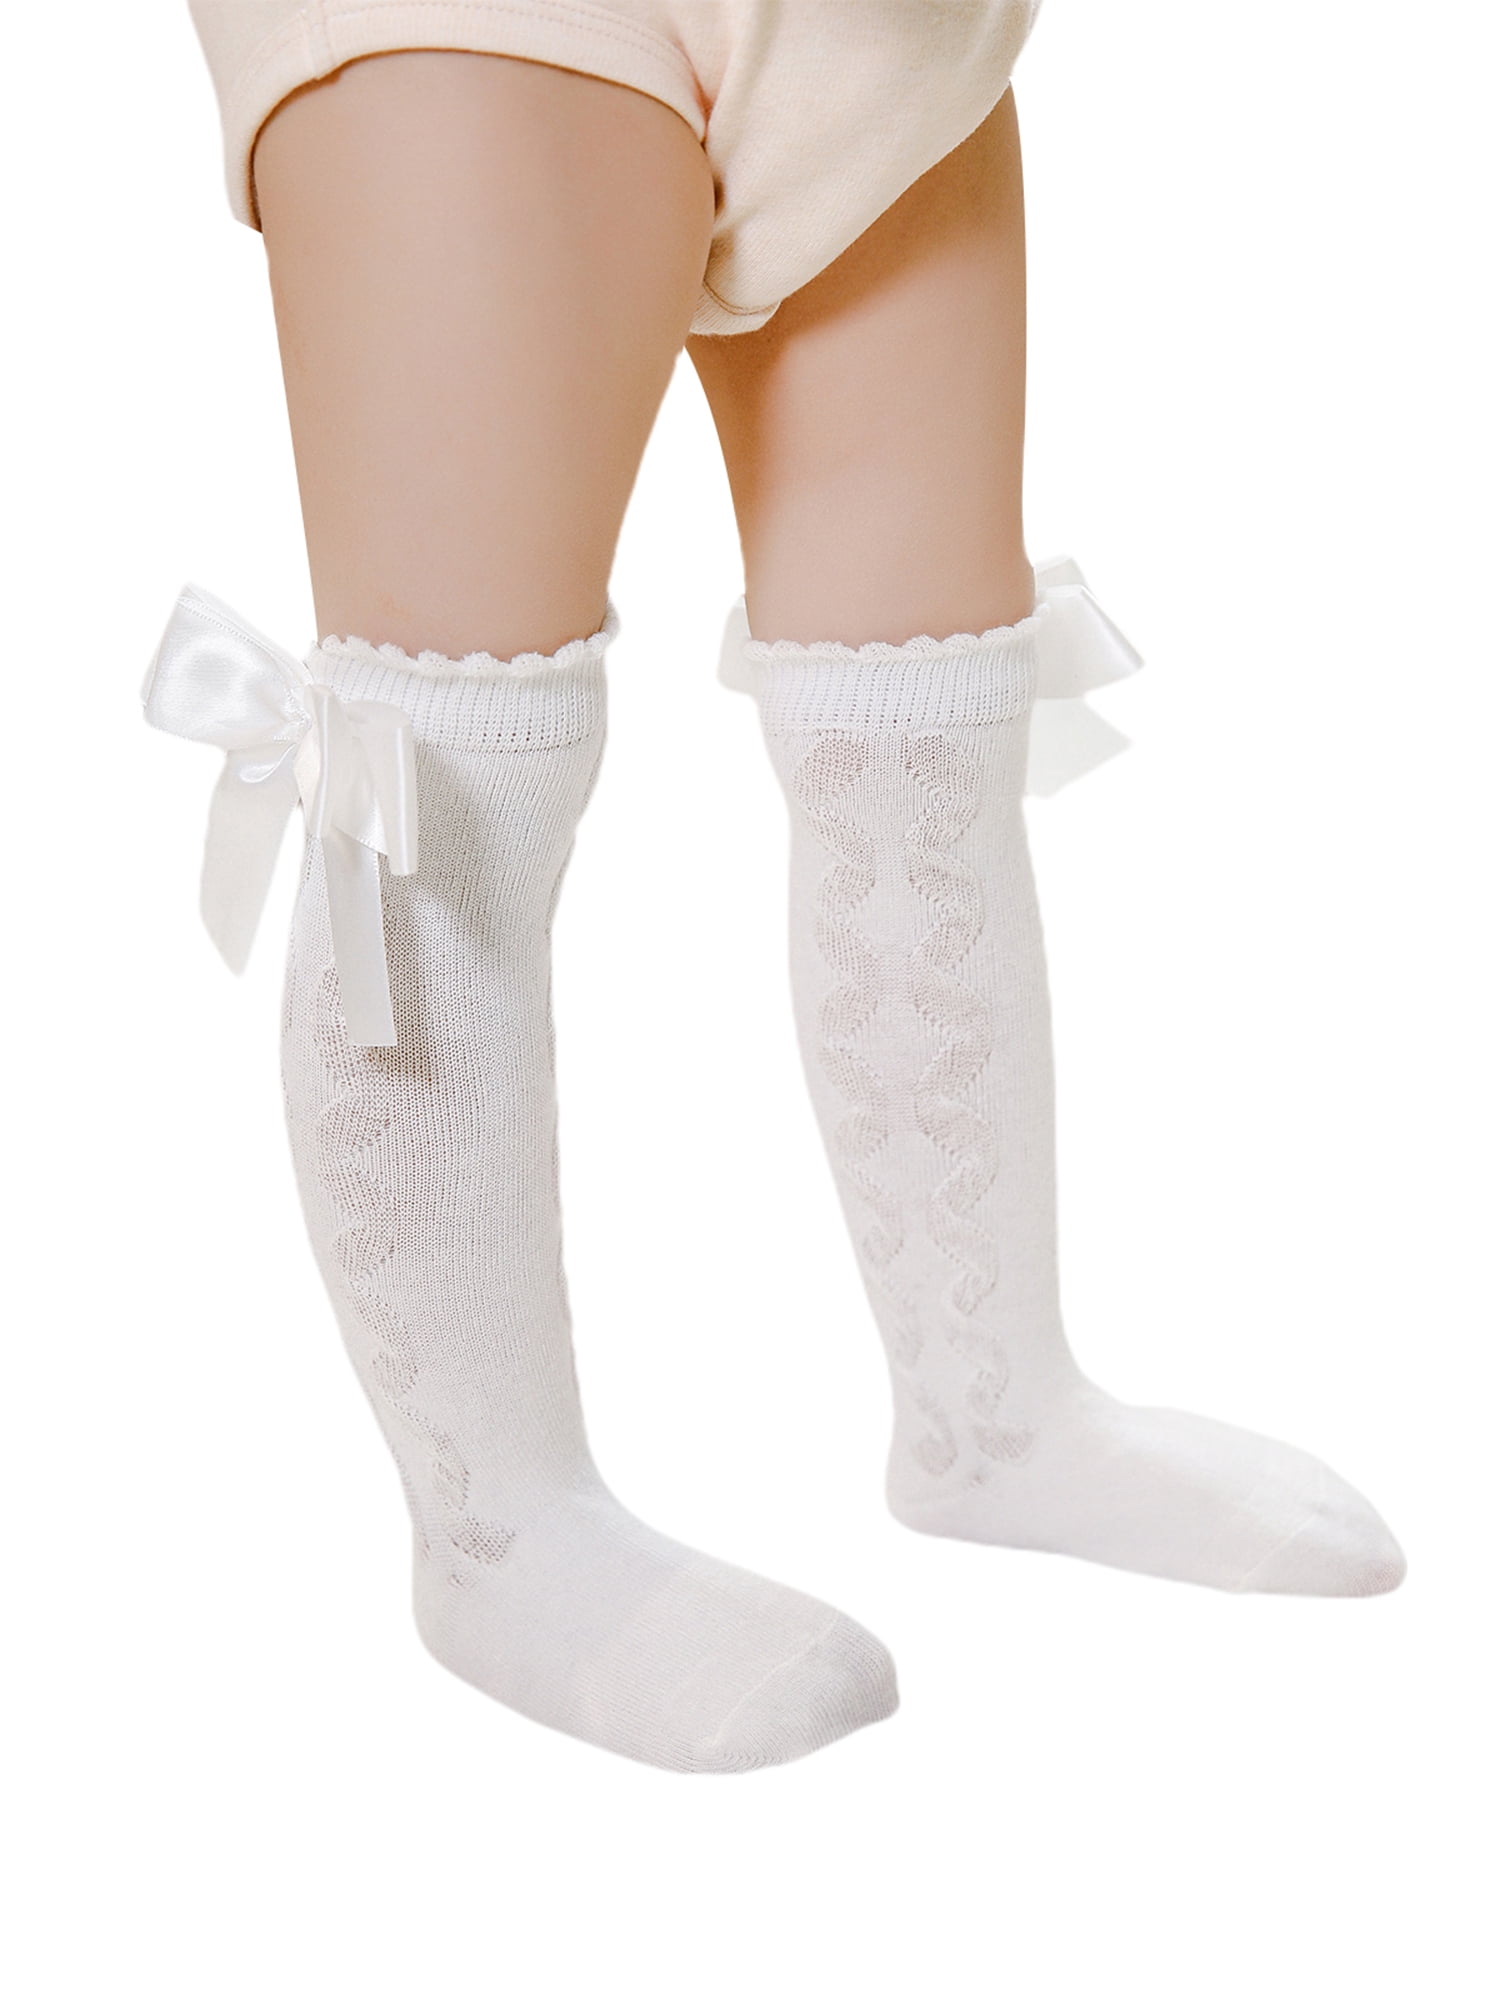 Essencedelight Socks Womens Stockings Top Tights Velvet Pantyhose Footed Leggings Pants Socks for Kids Girls